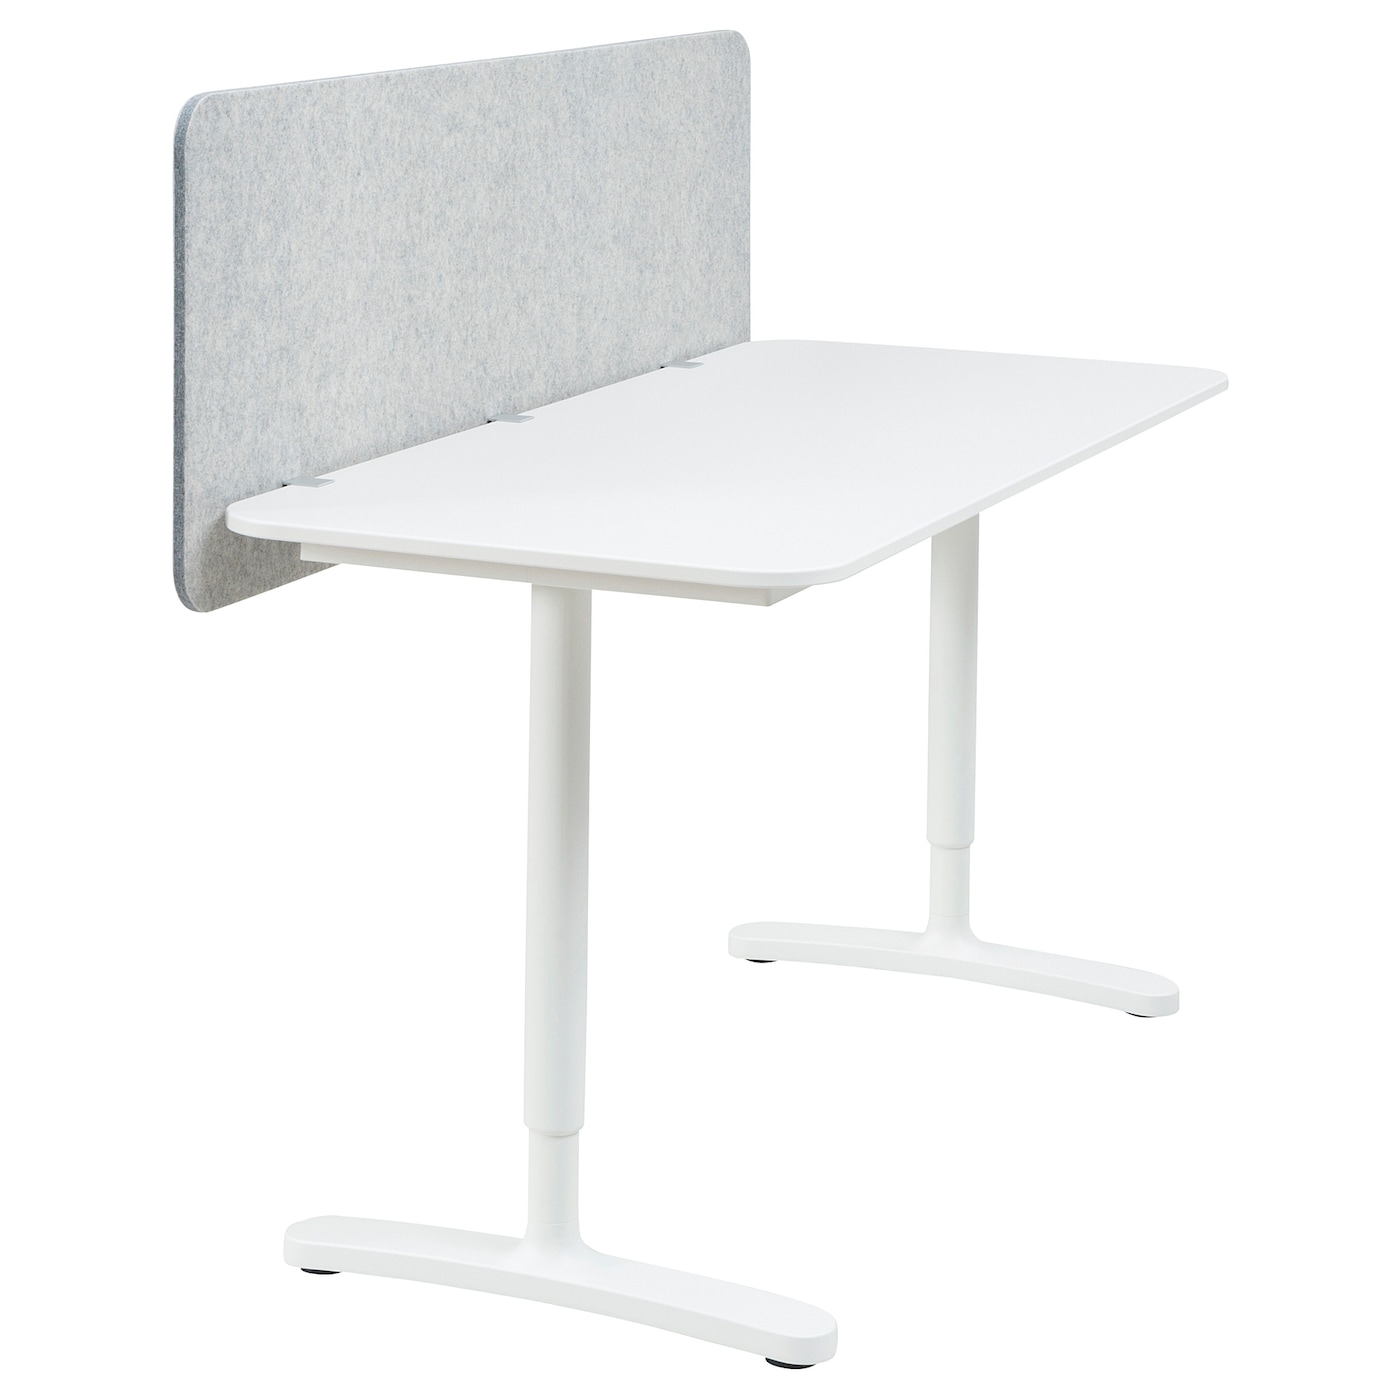 Письменный стол с экраном - IKEA BEKANT, 140х60х48 , серый/белый, БЕКАНТ ИКЕА